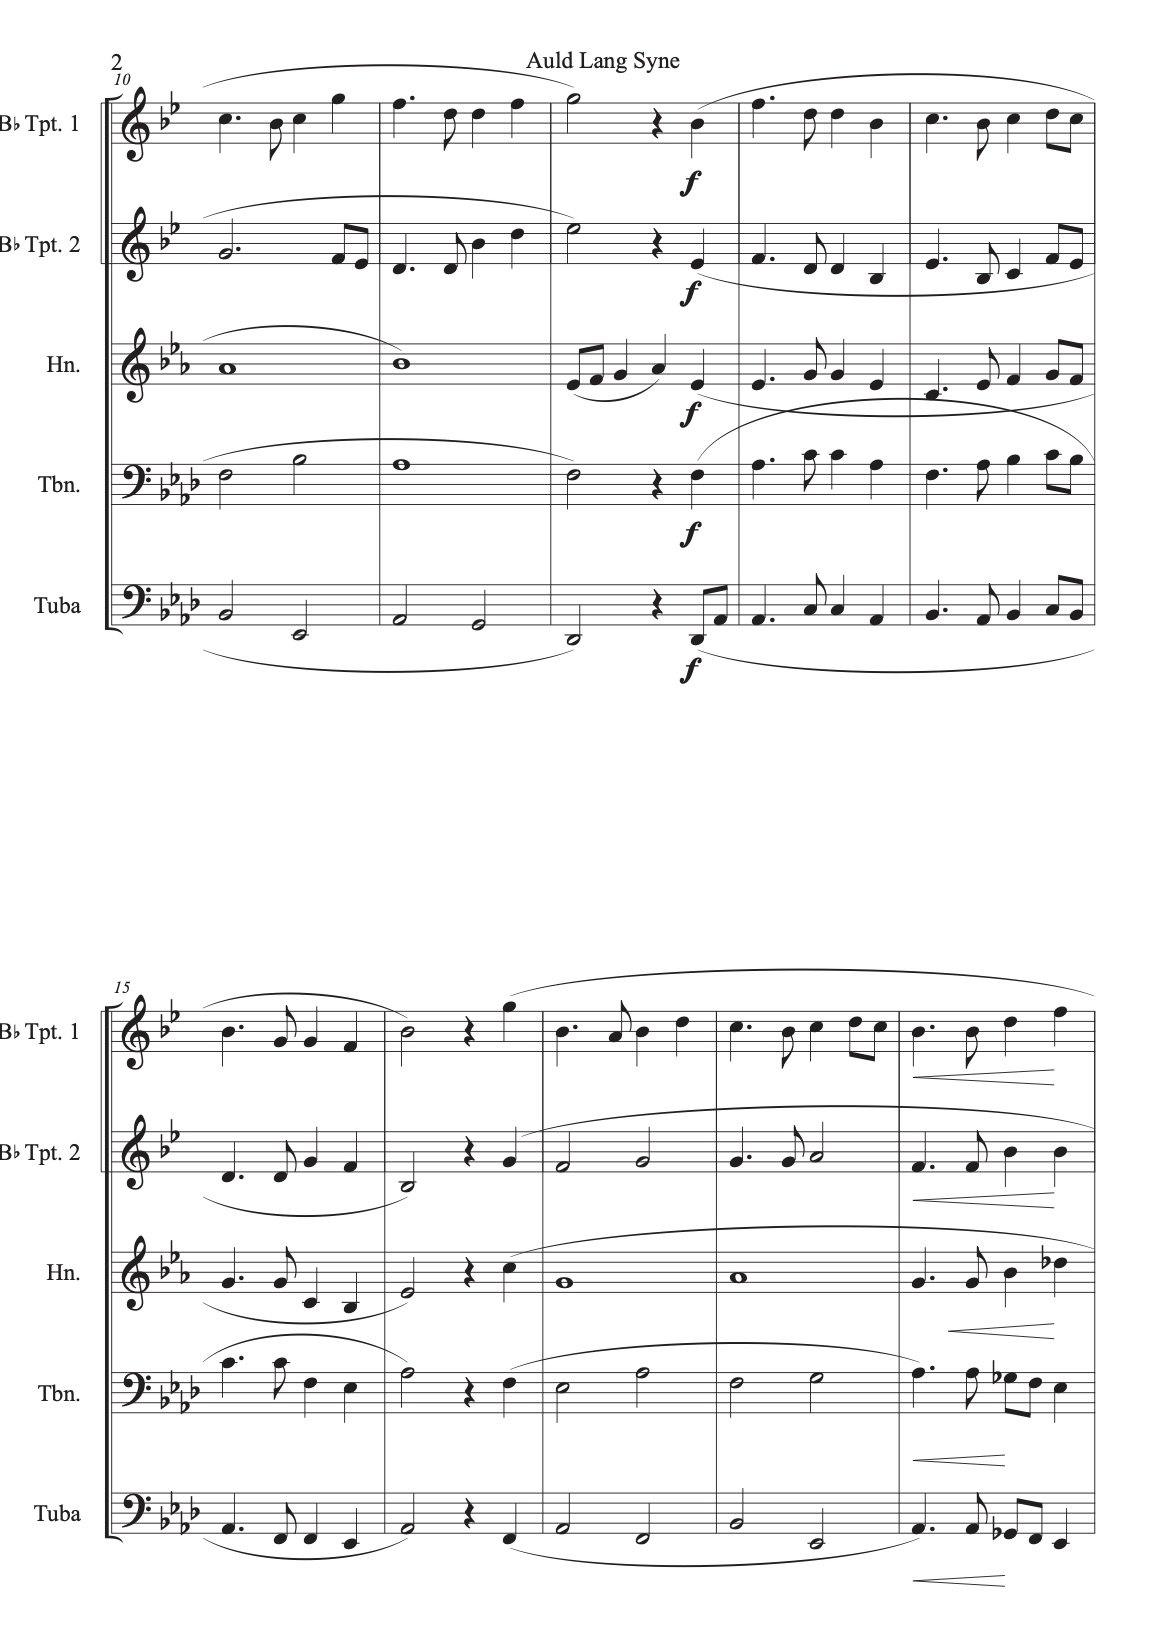 Brass Quintet sheet music: Auld Lang Syne - ChaipruckMekara